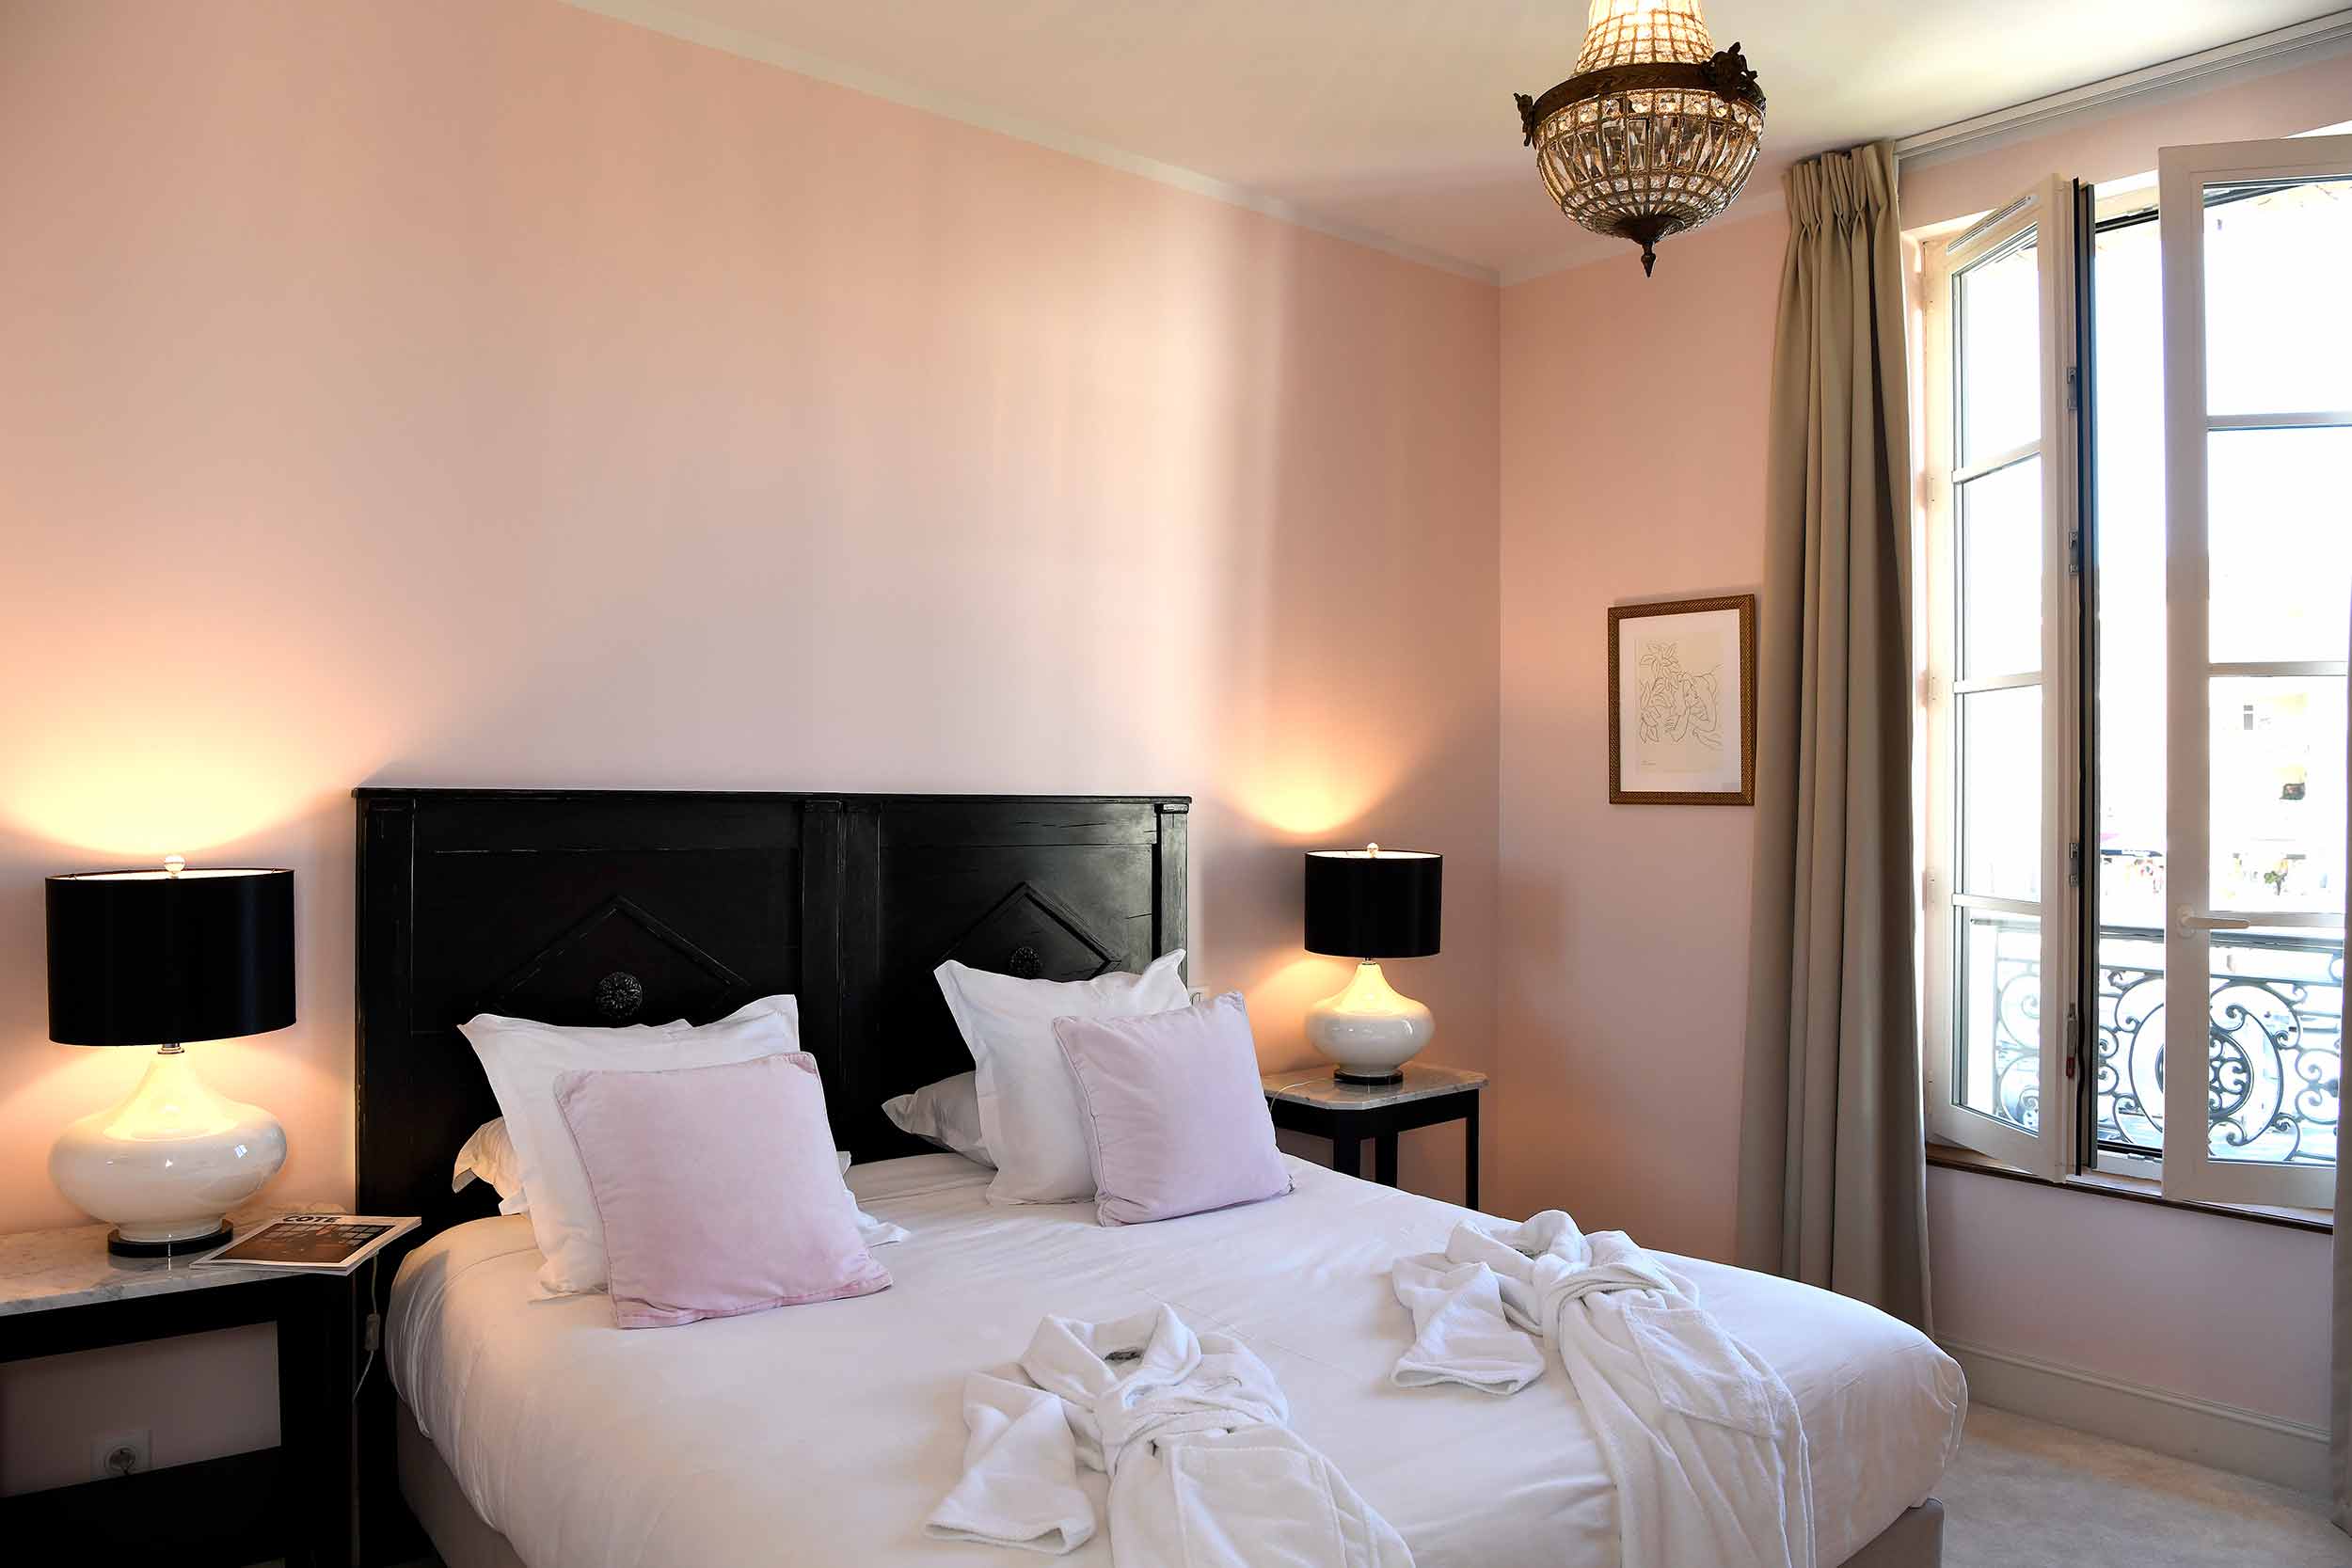 Luberon - Isle sur la sorgue - hôtel - luxe - Vaucluse - chambre- junior suite